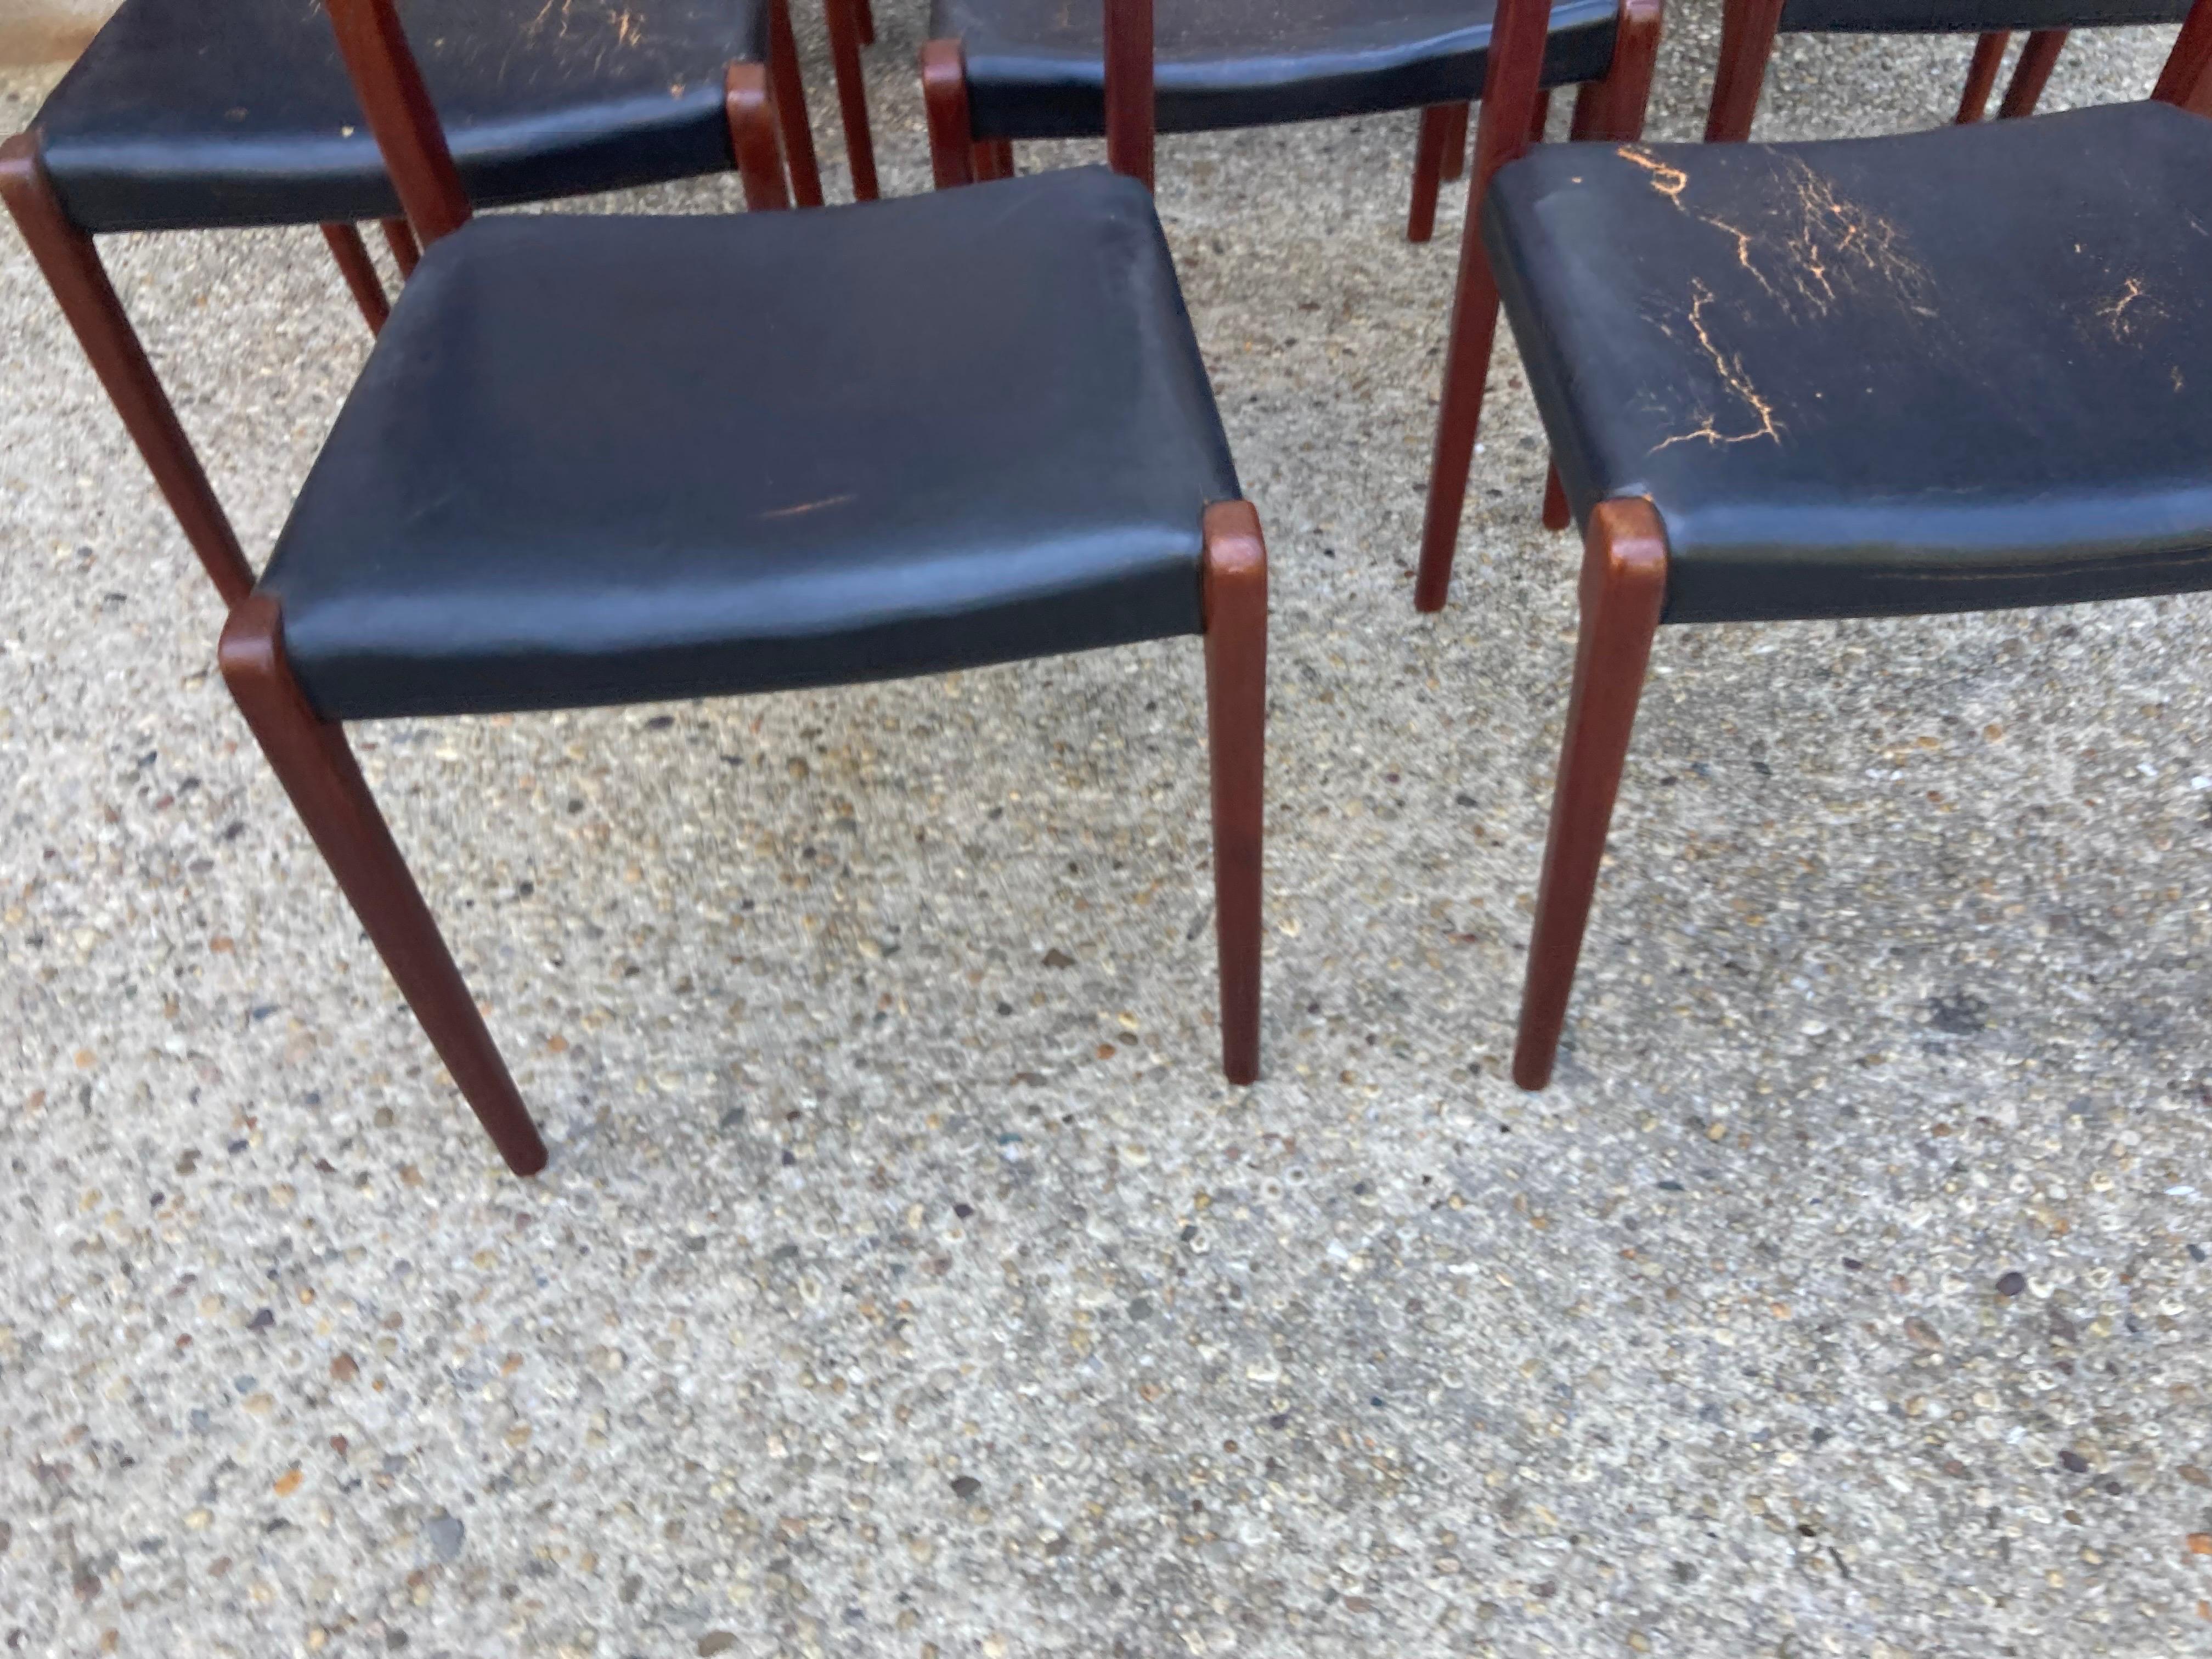 Un grand ensemble de 8 chaises de salle à manger Niels Moller no.71 en teck en très bon état mais les sièges en cuir doivent être remplacés par votre propre tissu/matériel.